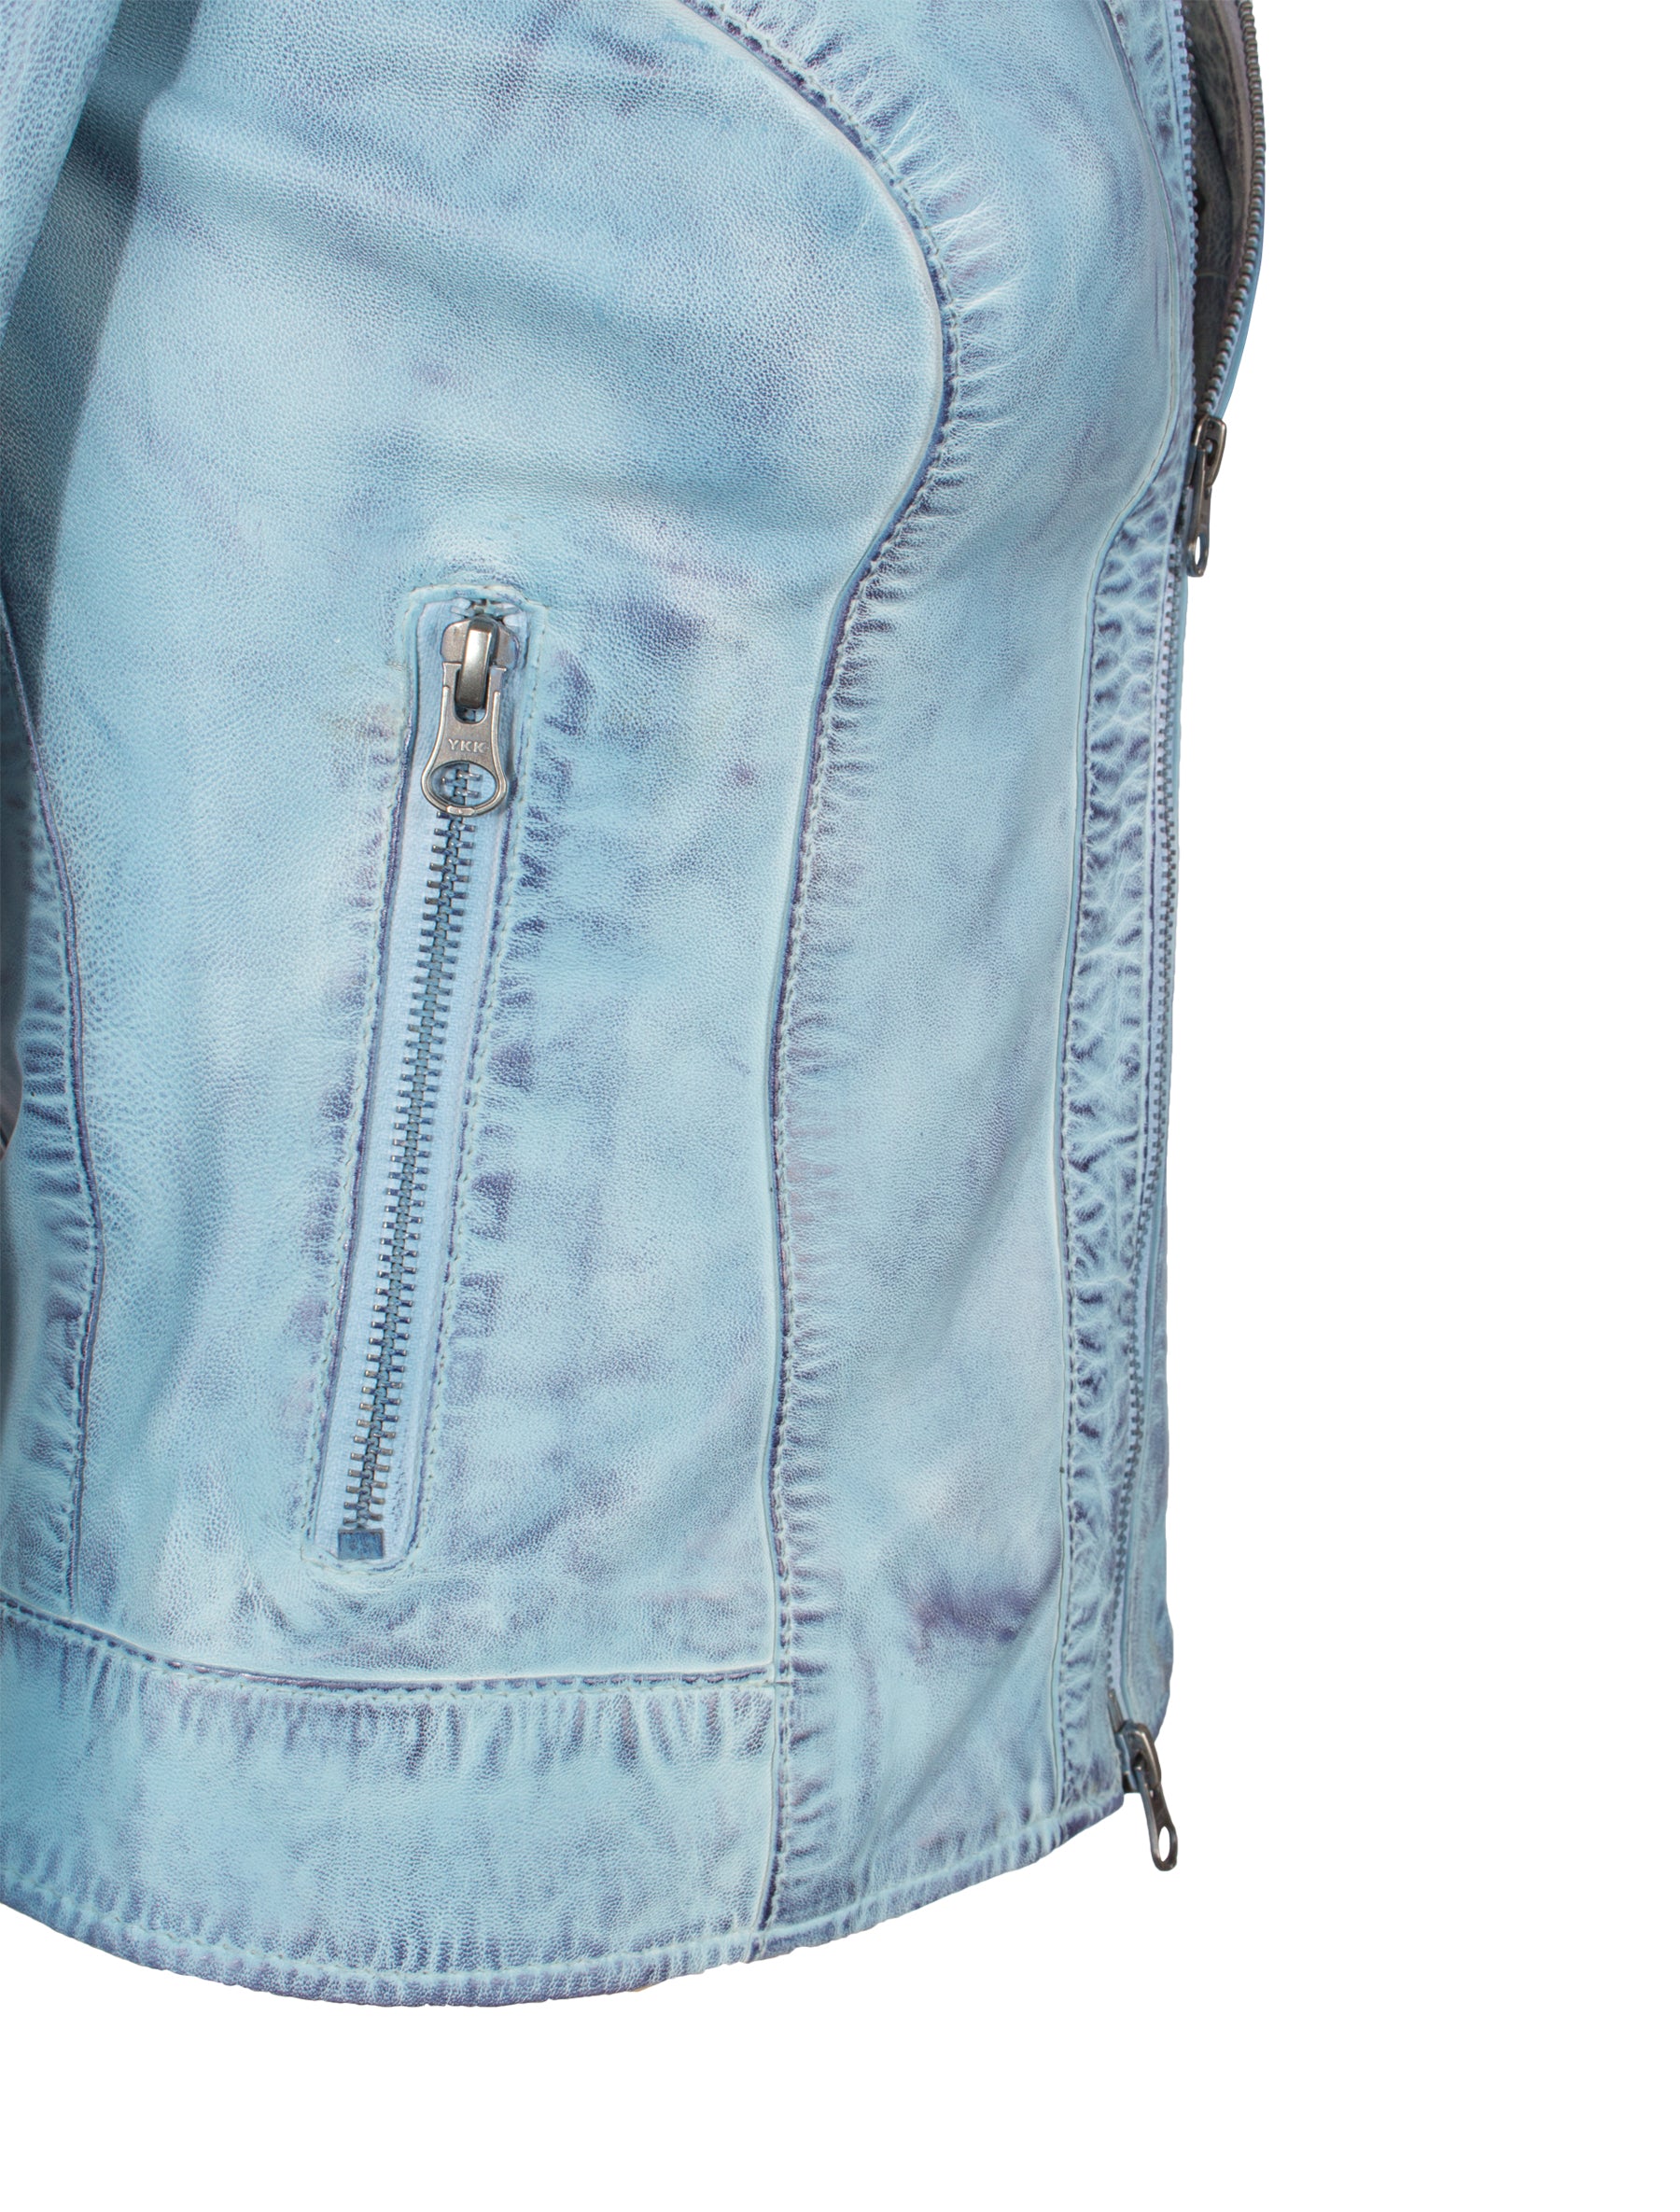 Kurze Damen Lederjacke in Jeans farben/ hellblau mit Stehkragen - Mary in crust blue